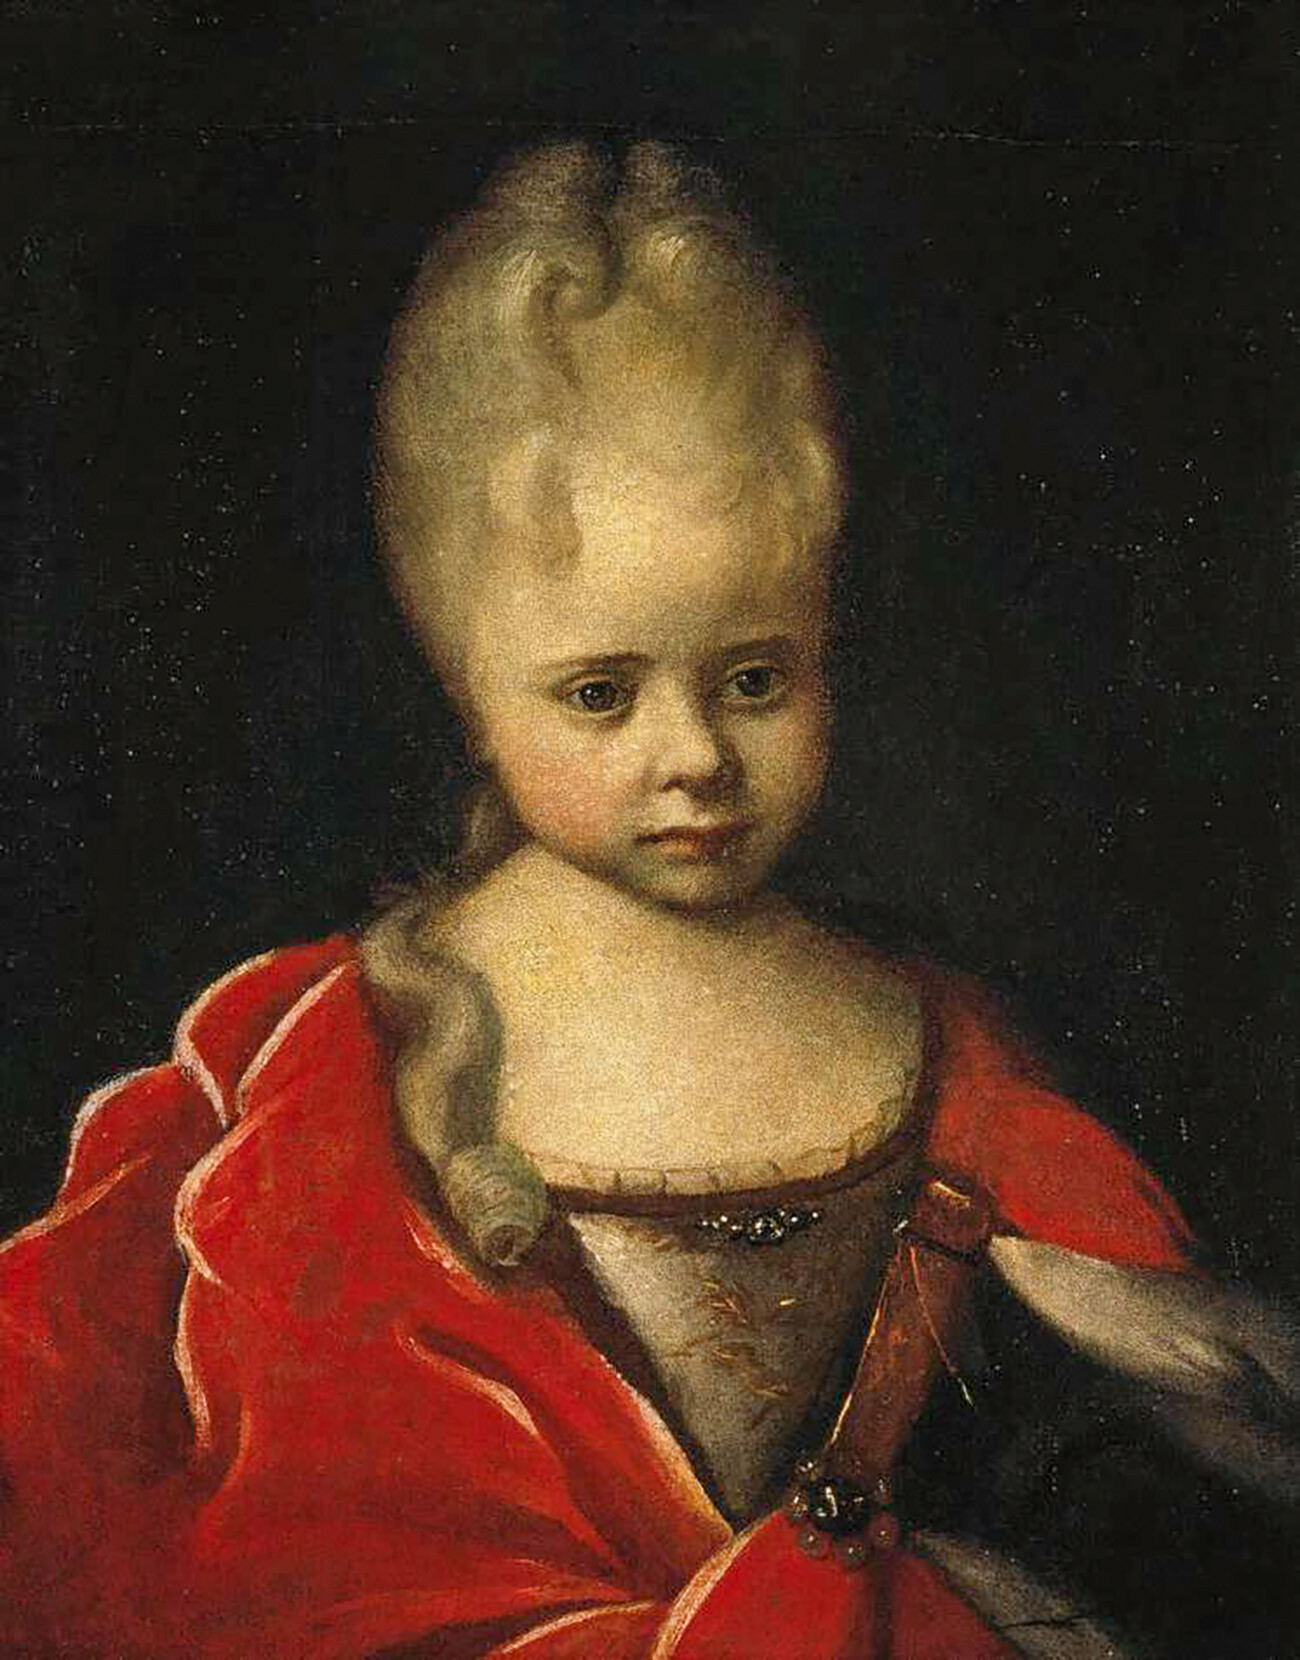 Elizabeth as a child, 1712-1713